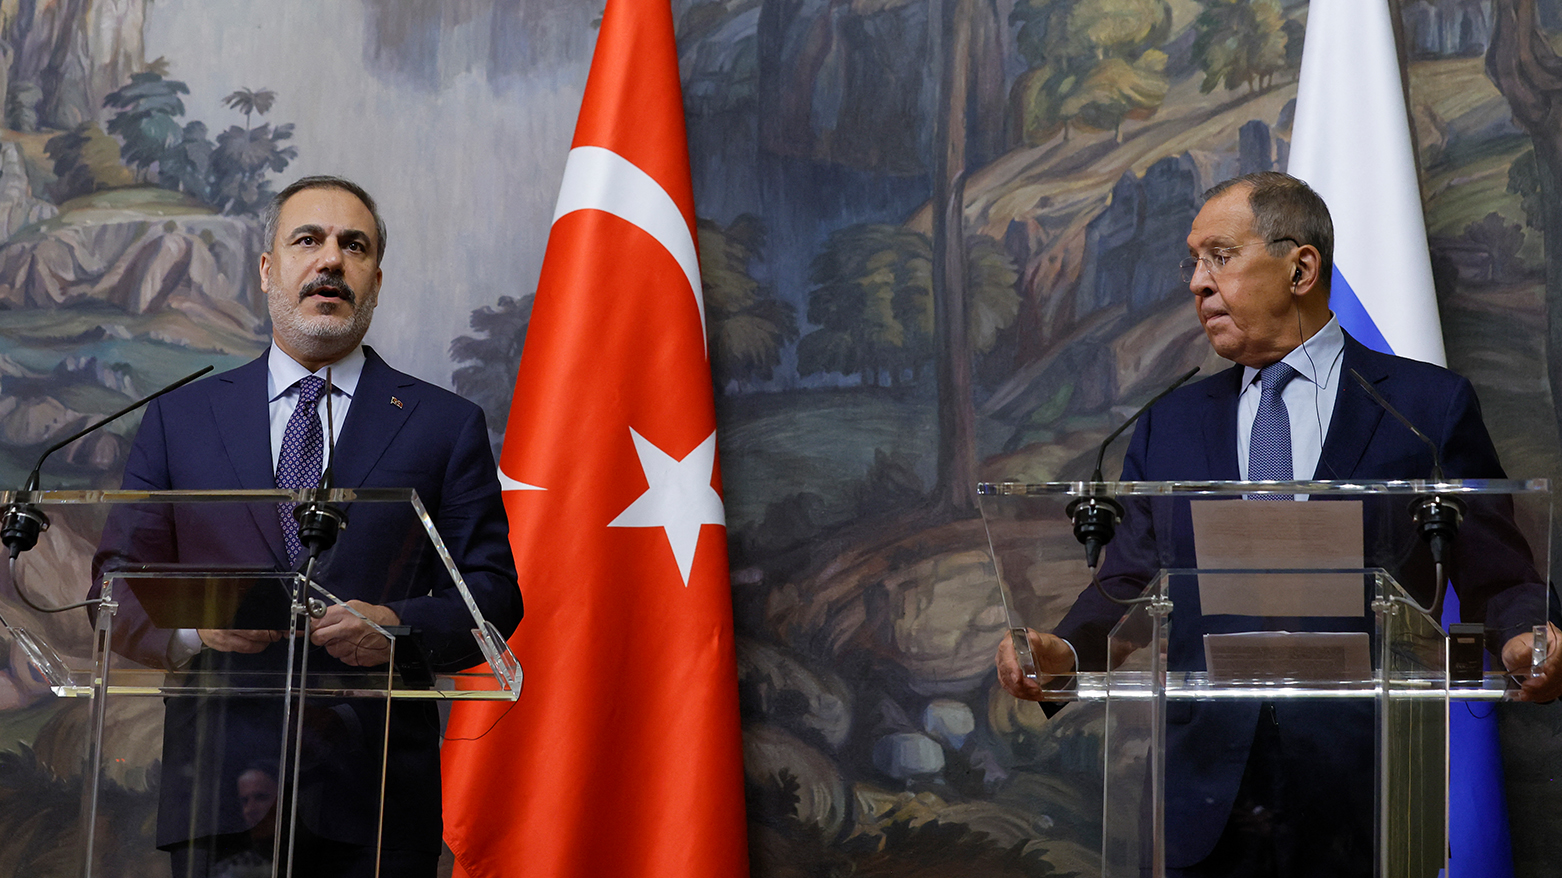 على يمين الصورة وزير الخارجية الروسي سيرغي لافروق وعلى الشمال وزير الخارجية التركي هاكان فيدان